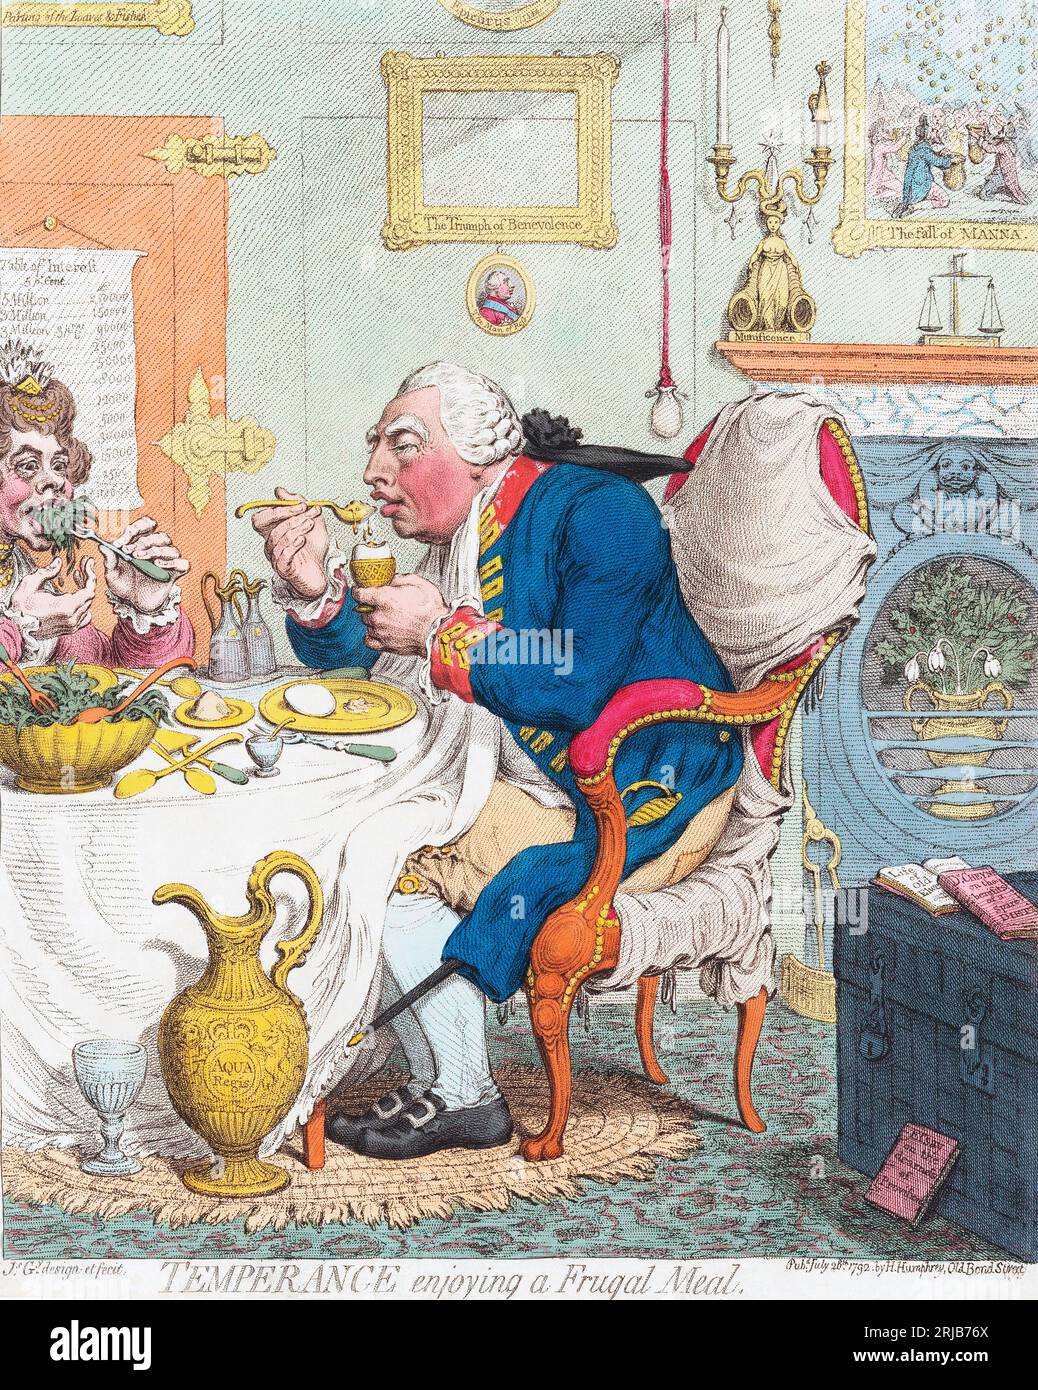 "Mäßigung, die eine sparsame Mahlzeit genießt". Ein satirischer Druck von James Gillray vom 28. Juli 1792. König Georg III. Und seine Frau Königin Charlotte aßen eines ihrer berühmten frugalen Mahlzeiten. Stockfoto